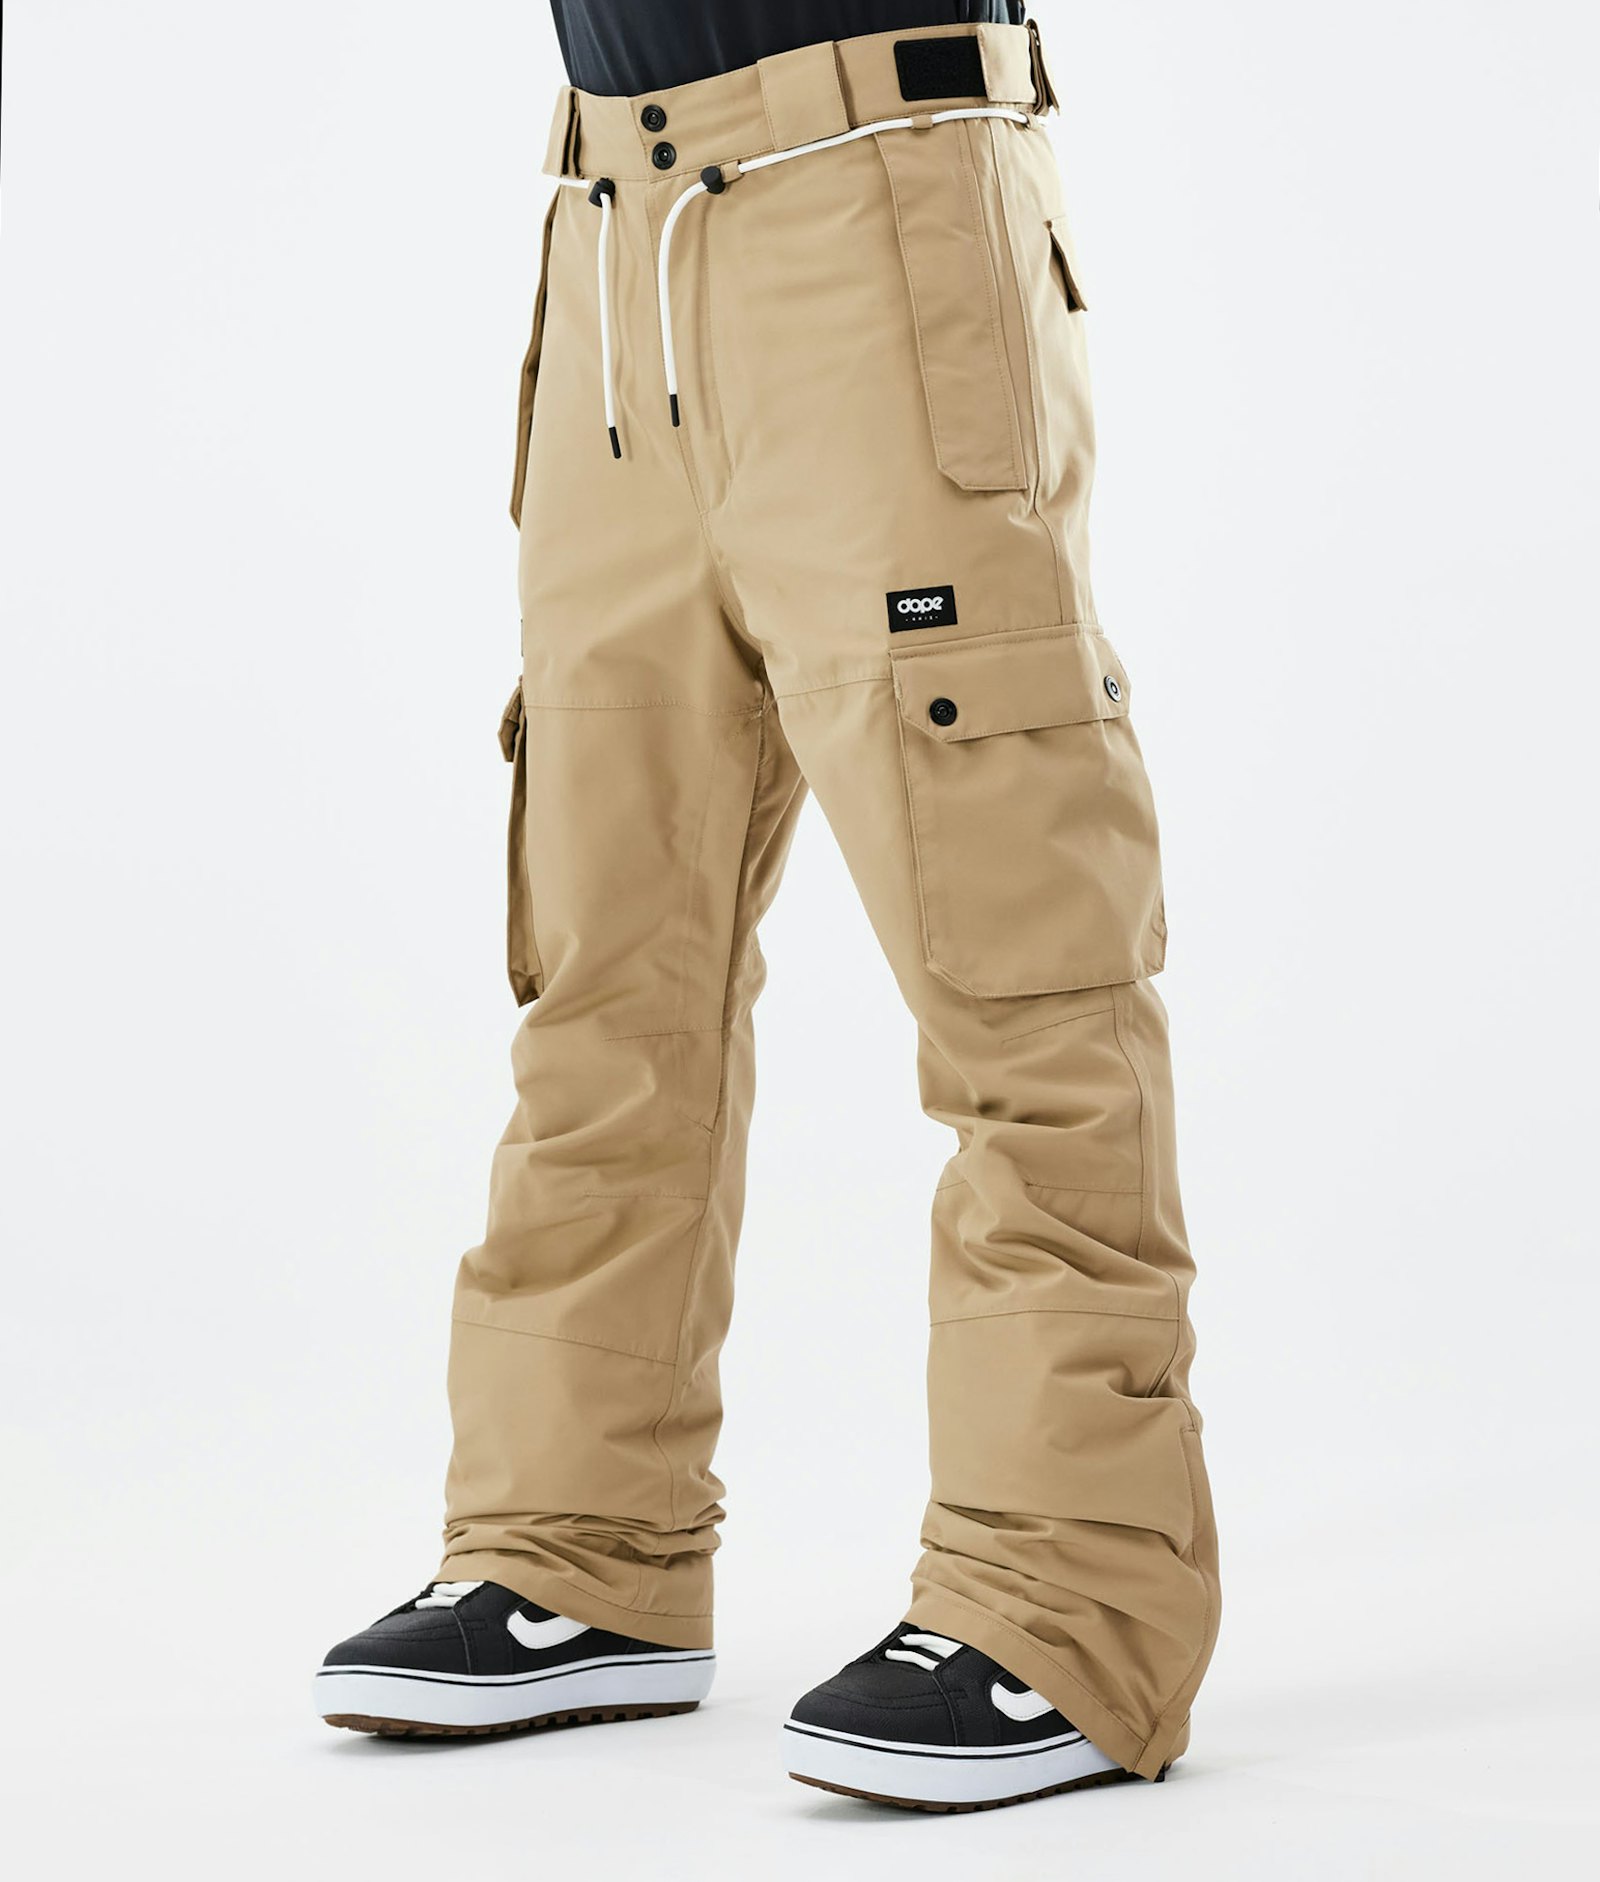 Iconic 2021 Pantalon de Snowboard Homme Khaki, Image 1 sur 6